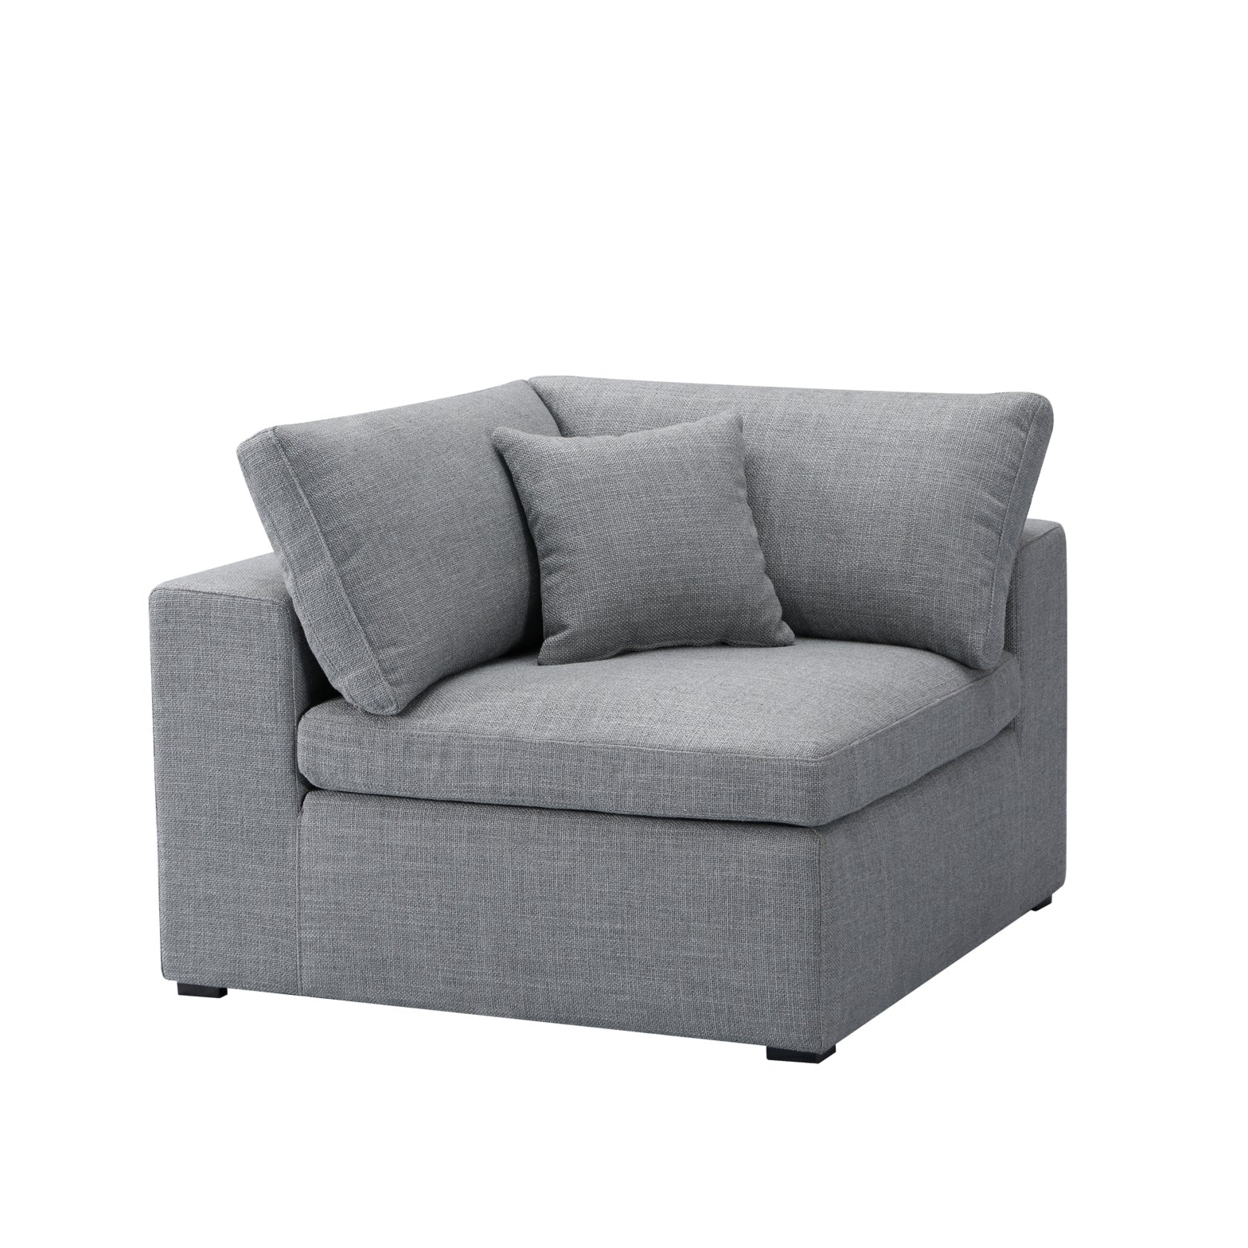 InÃ¨s Sofa - Corner Module - Grey Fabric